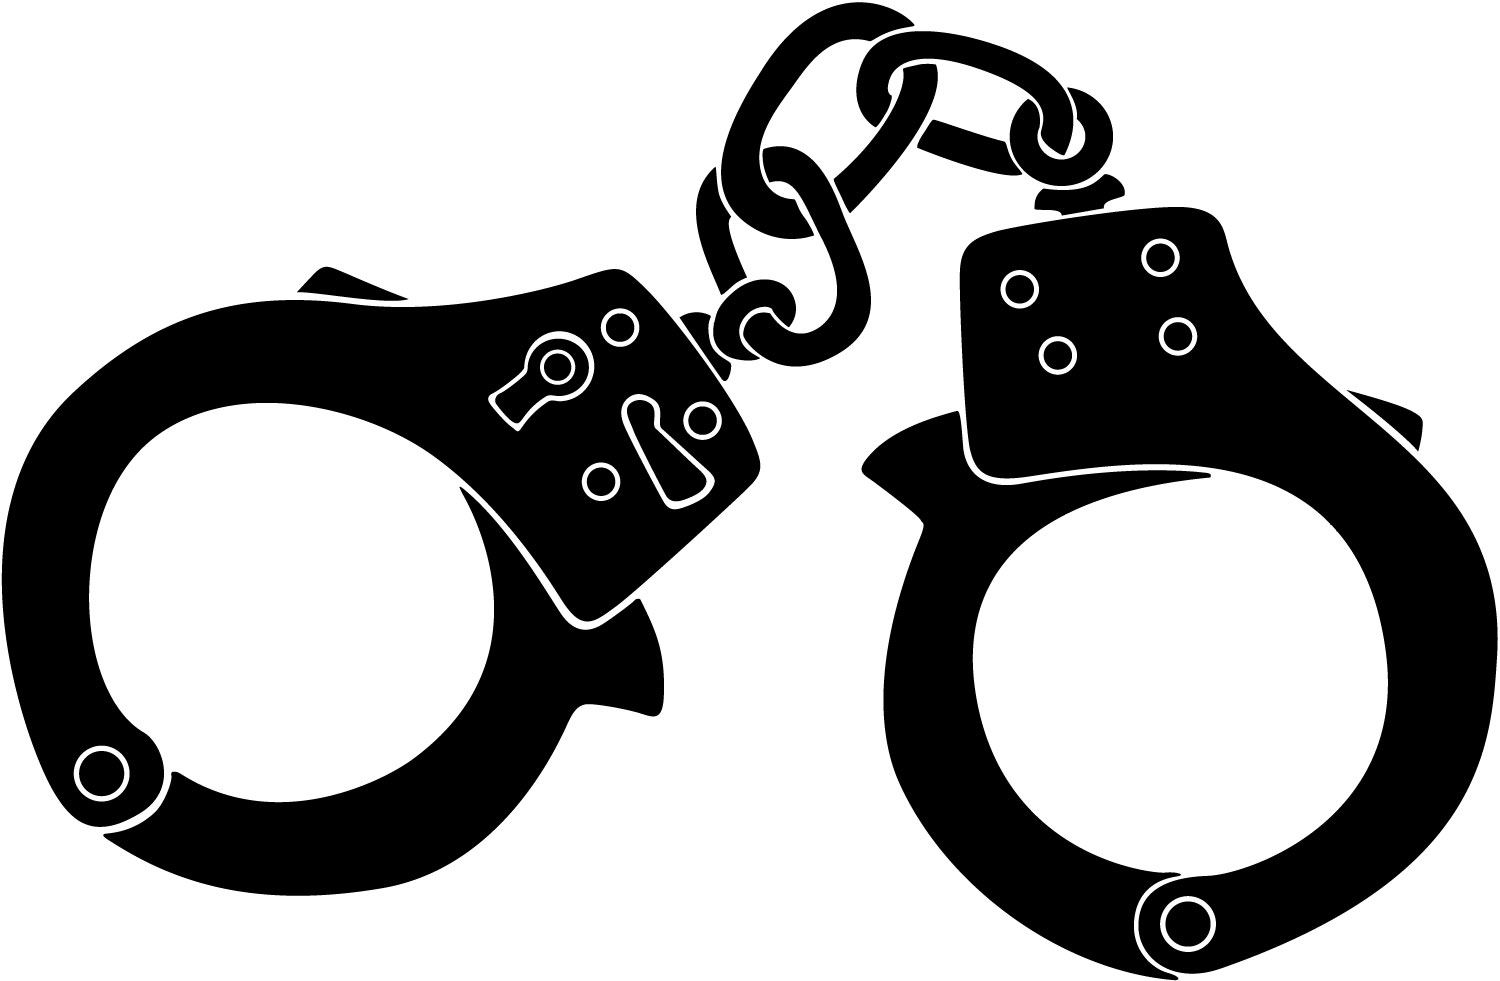 Black and white handcuffs cli - Handcuffs Clipart